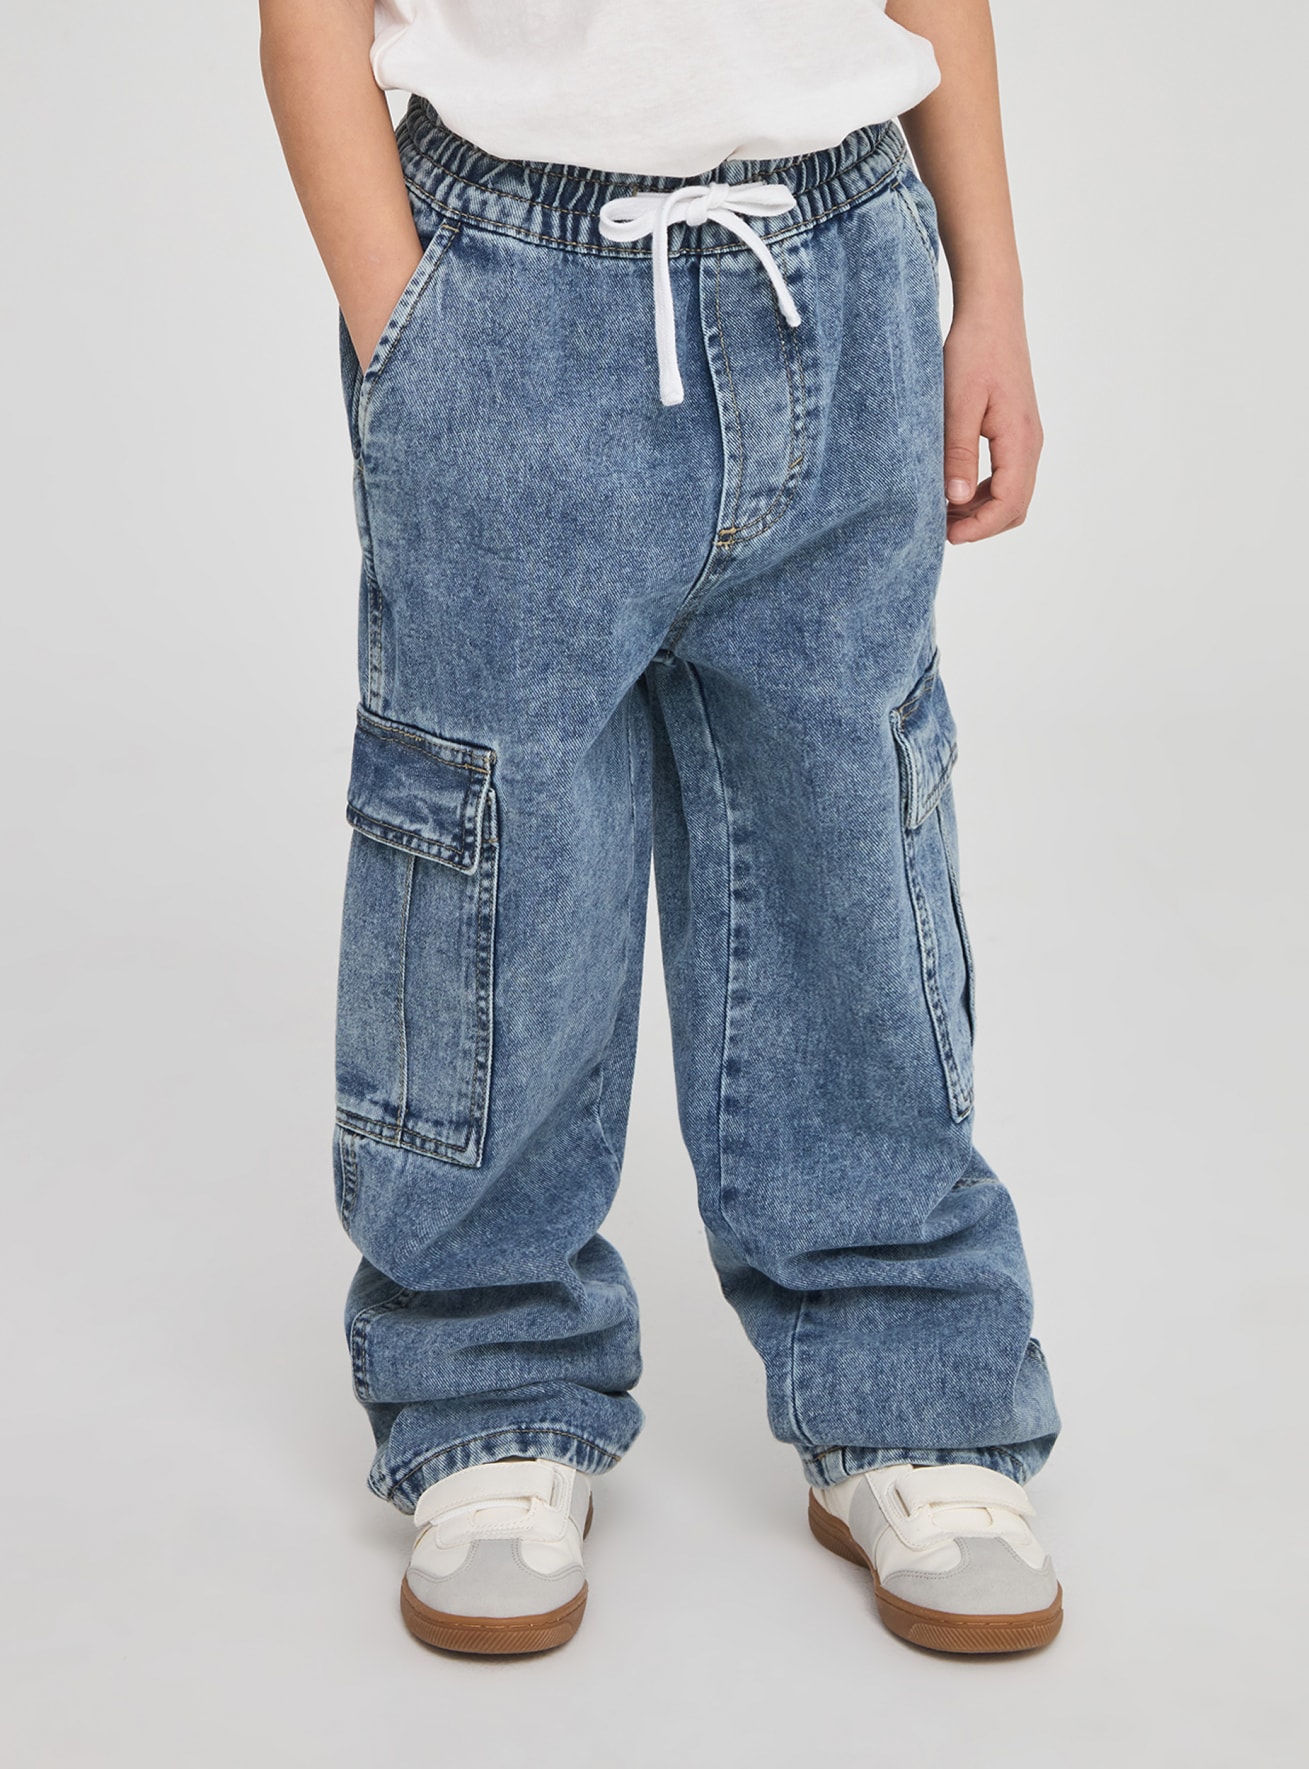 Pantalone Jeans Lungo Bambino Kids